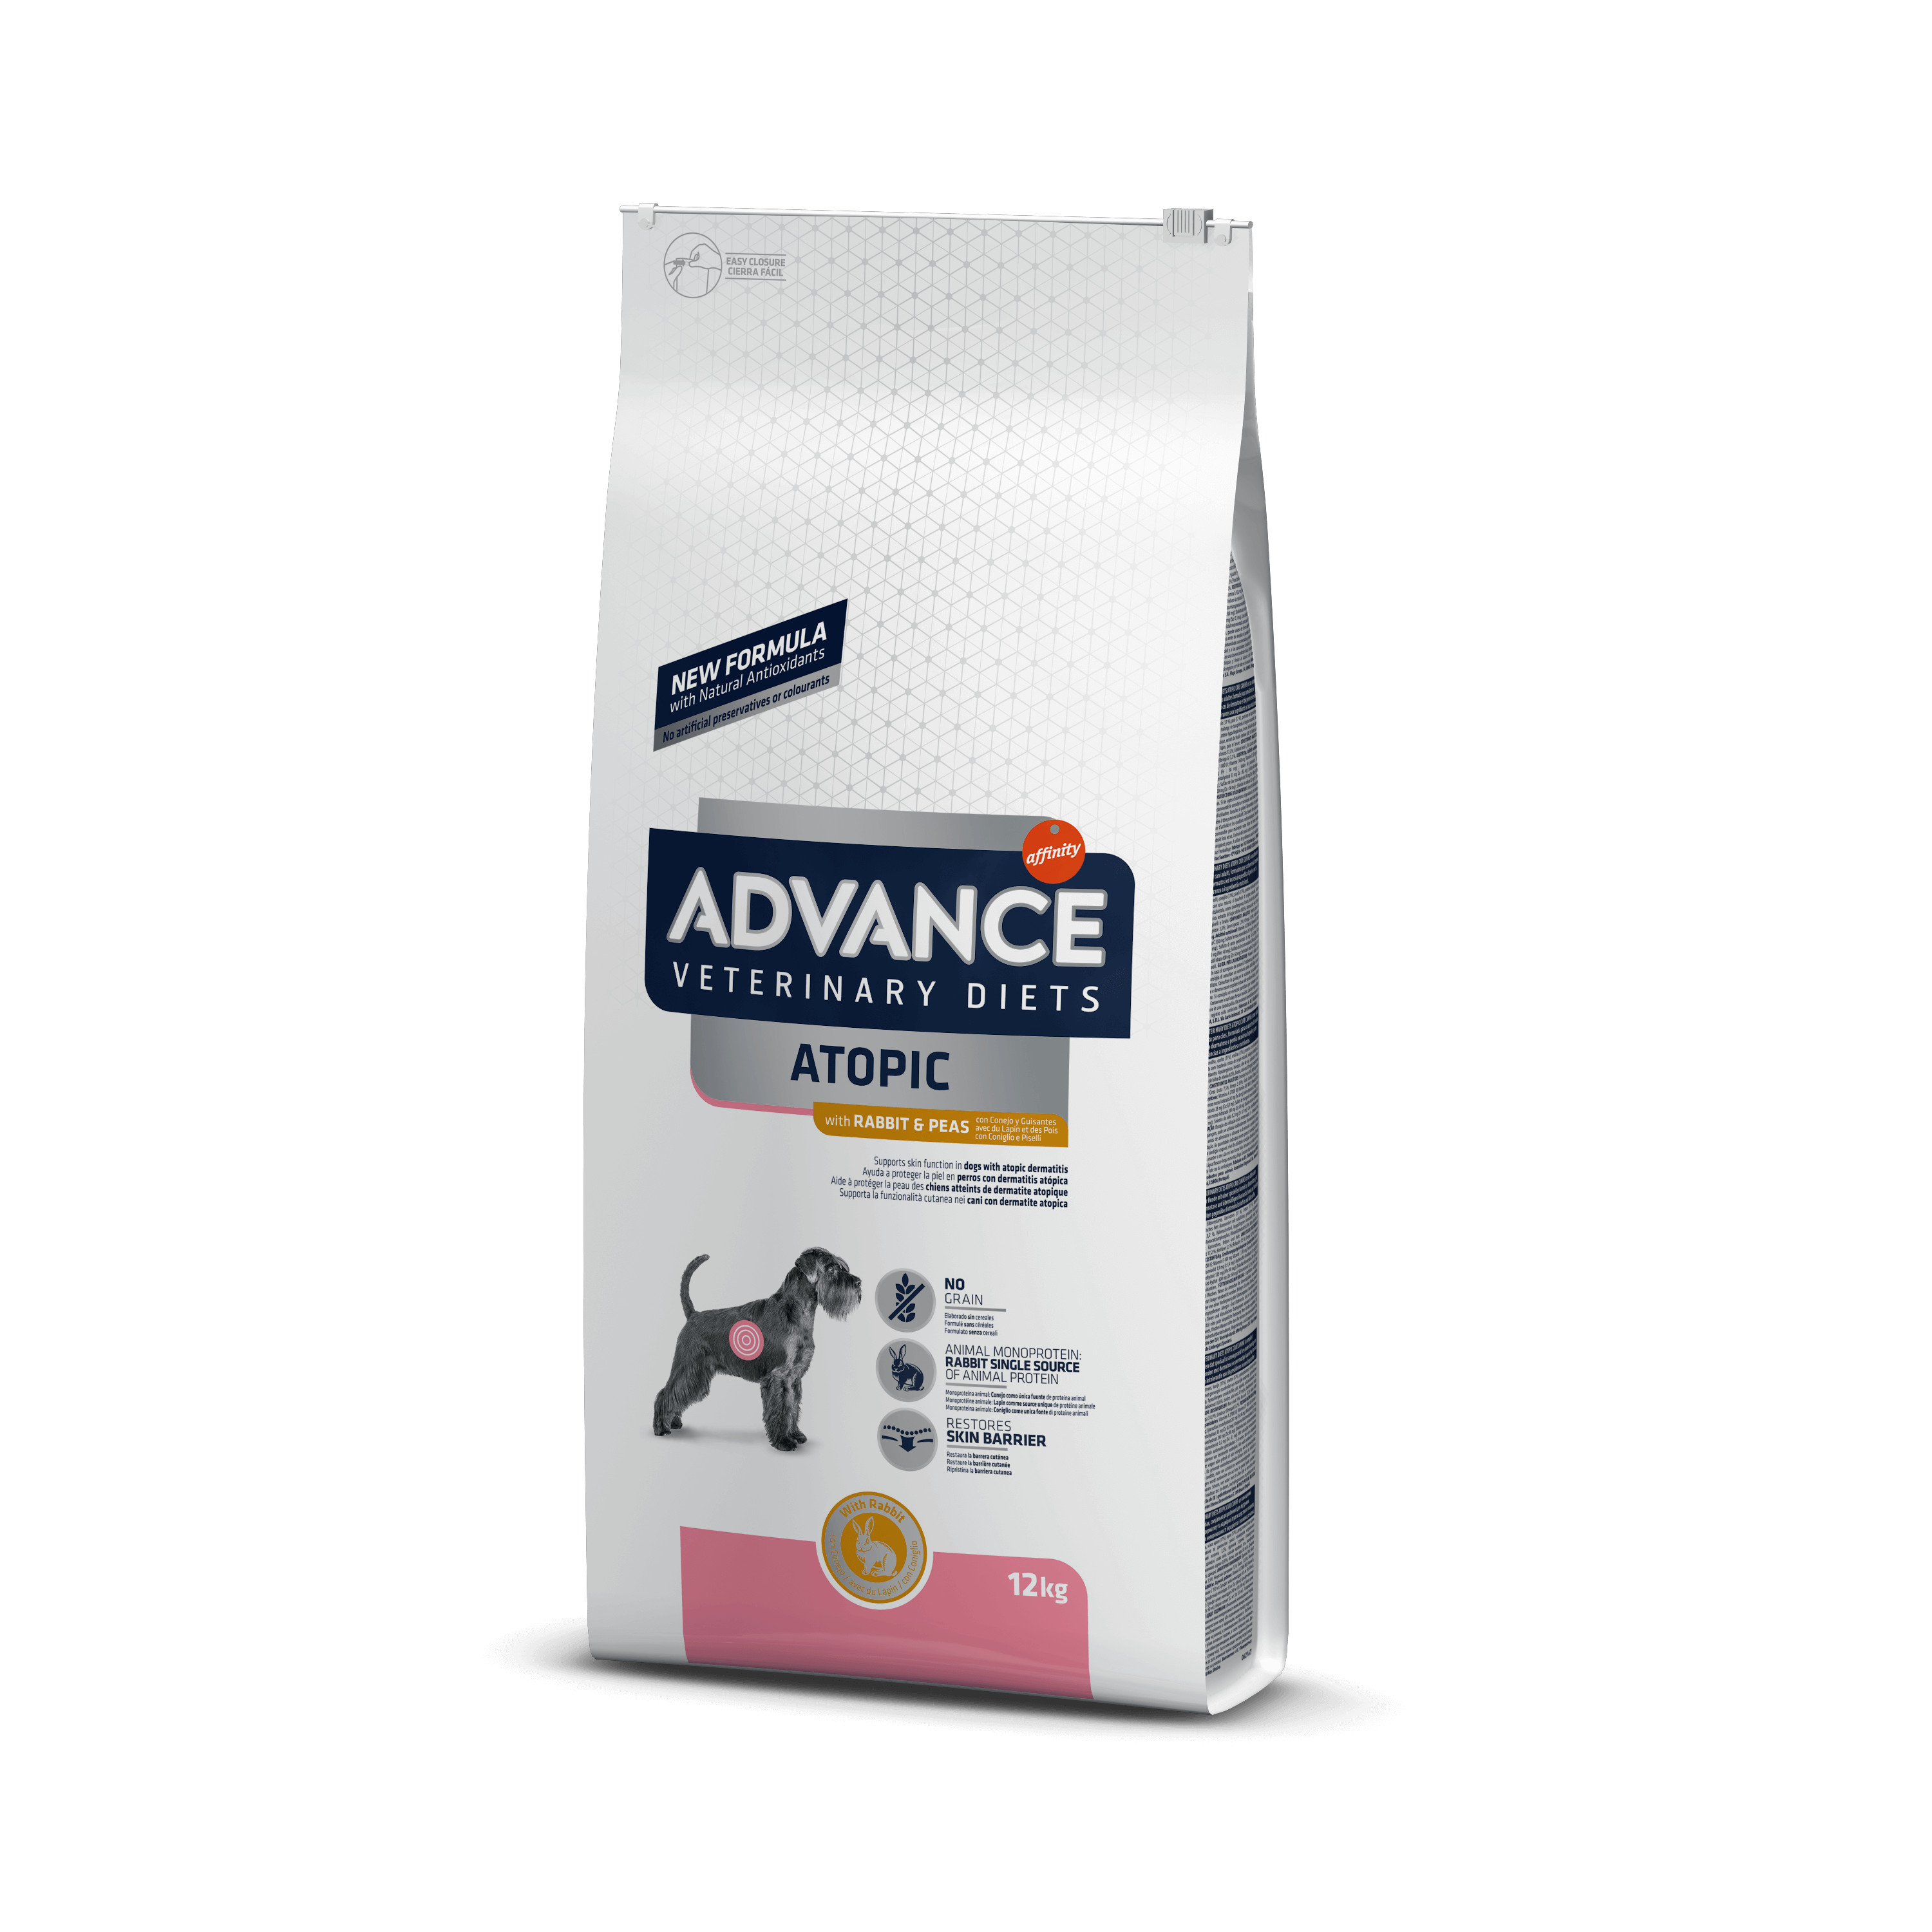 Afbeelding van 12 kg Advance Veterinary Diets Atopic Medium Maxi met konijn hondenvoer